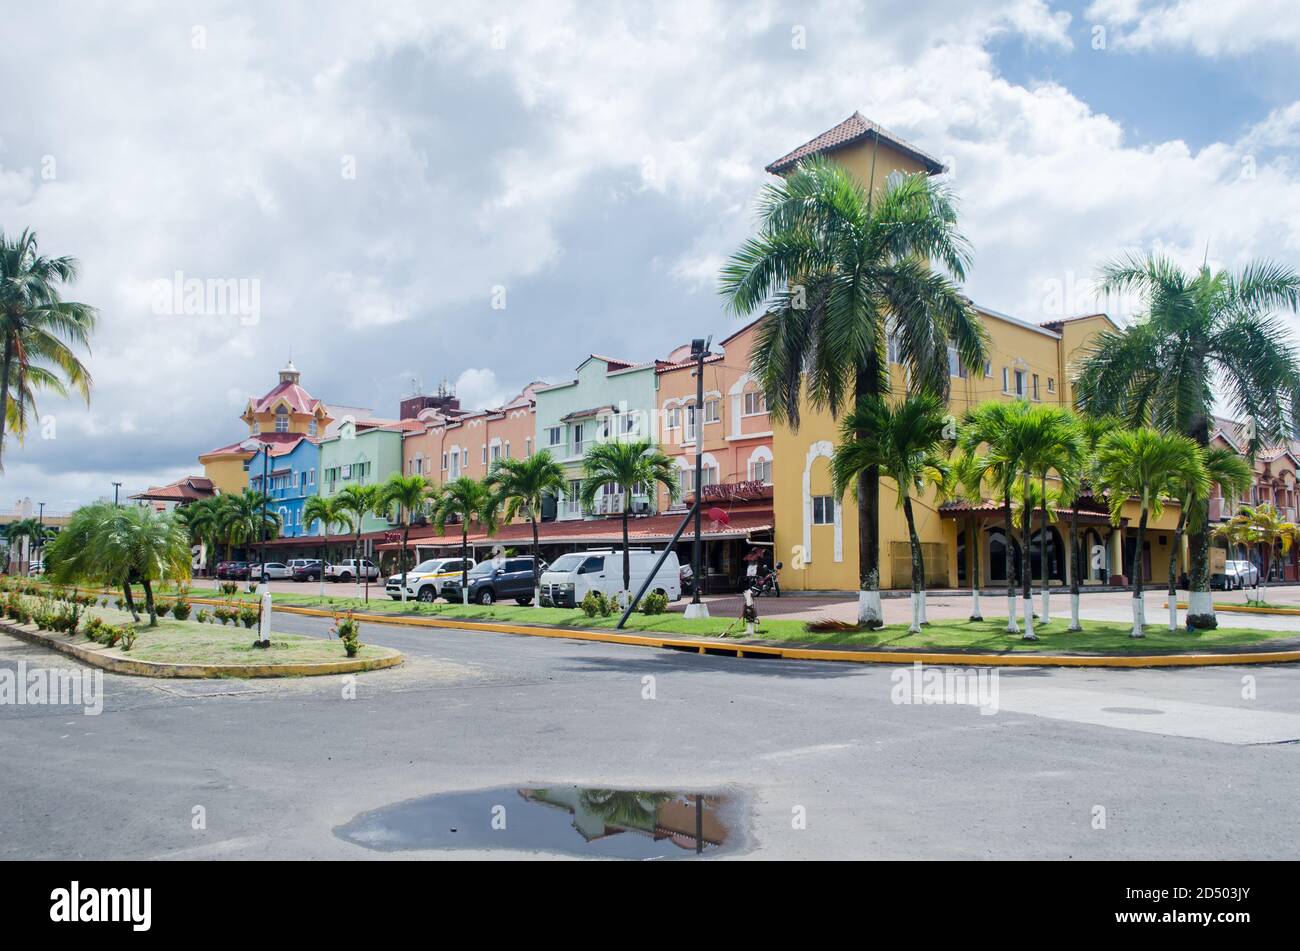 Plaza Colon 2000 facilities located next to Port Colon 2000 in the Caribbean City of Colon Stock Photo